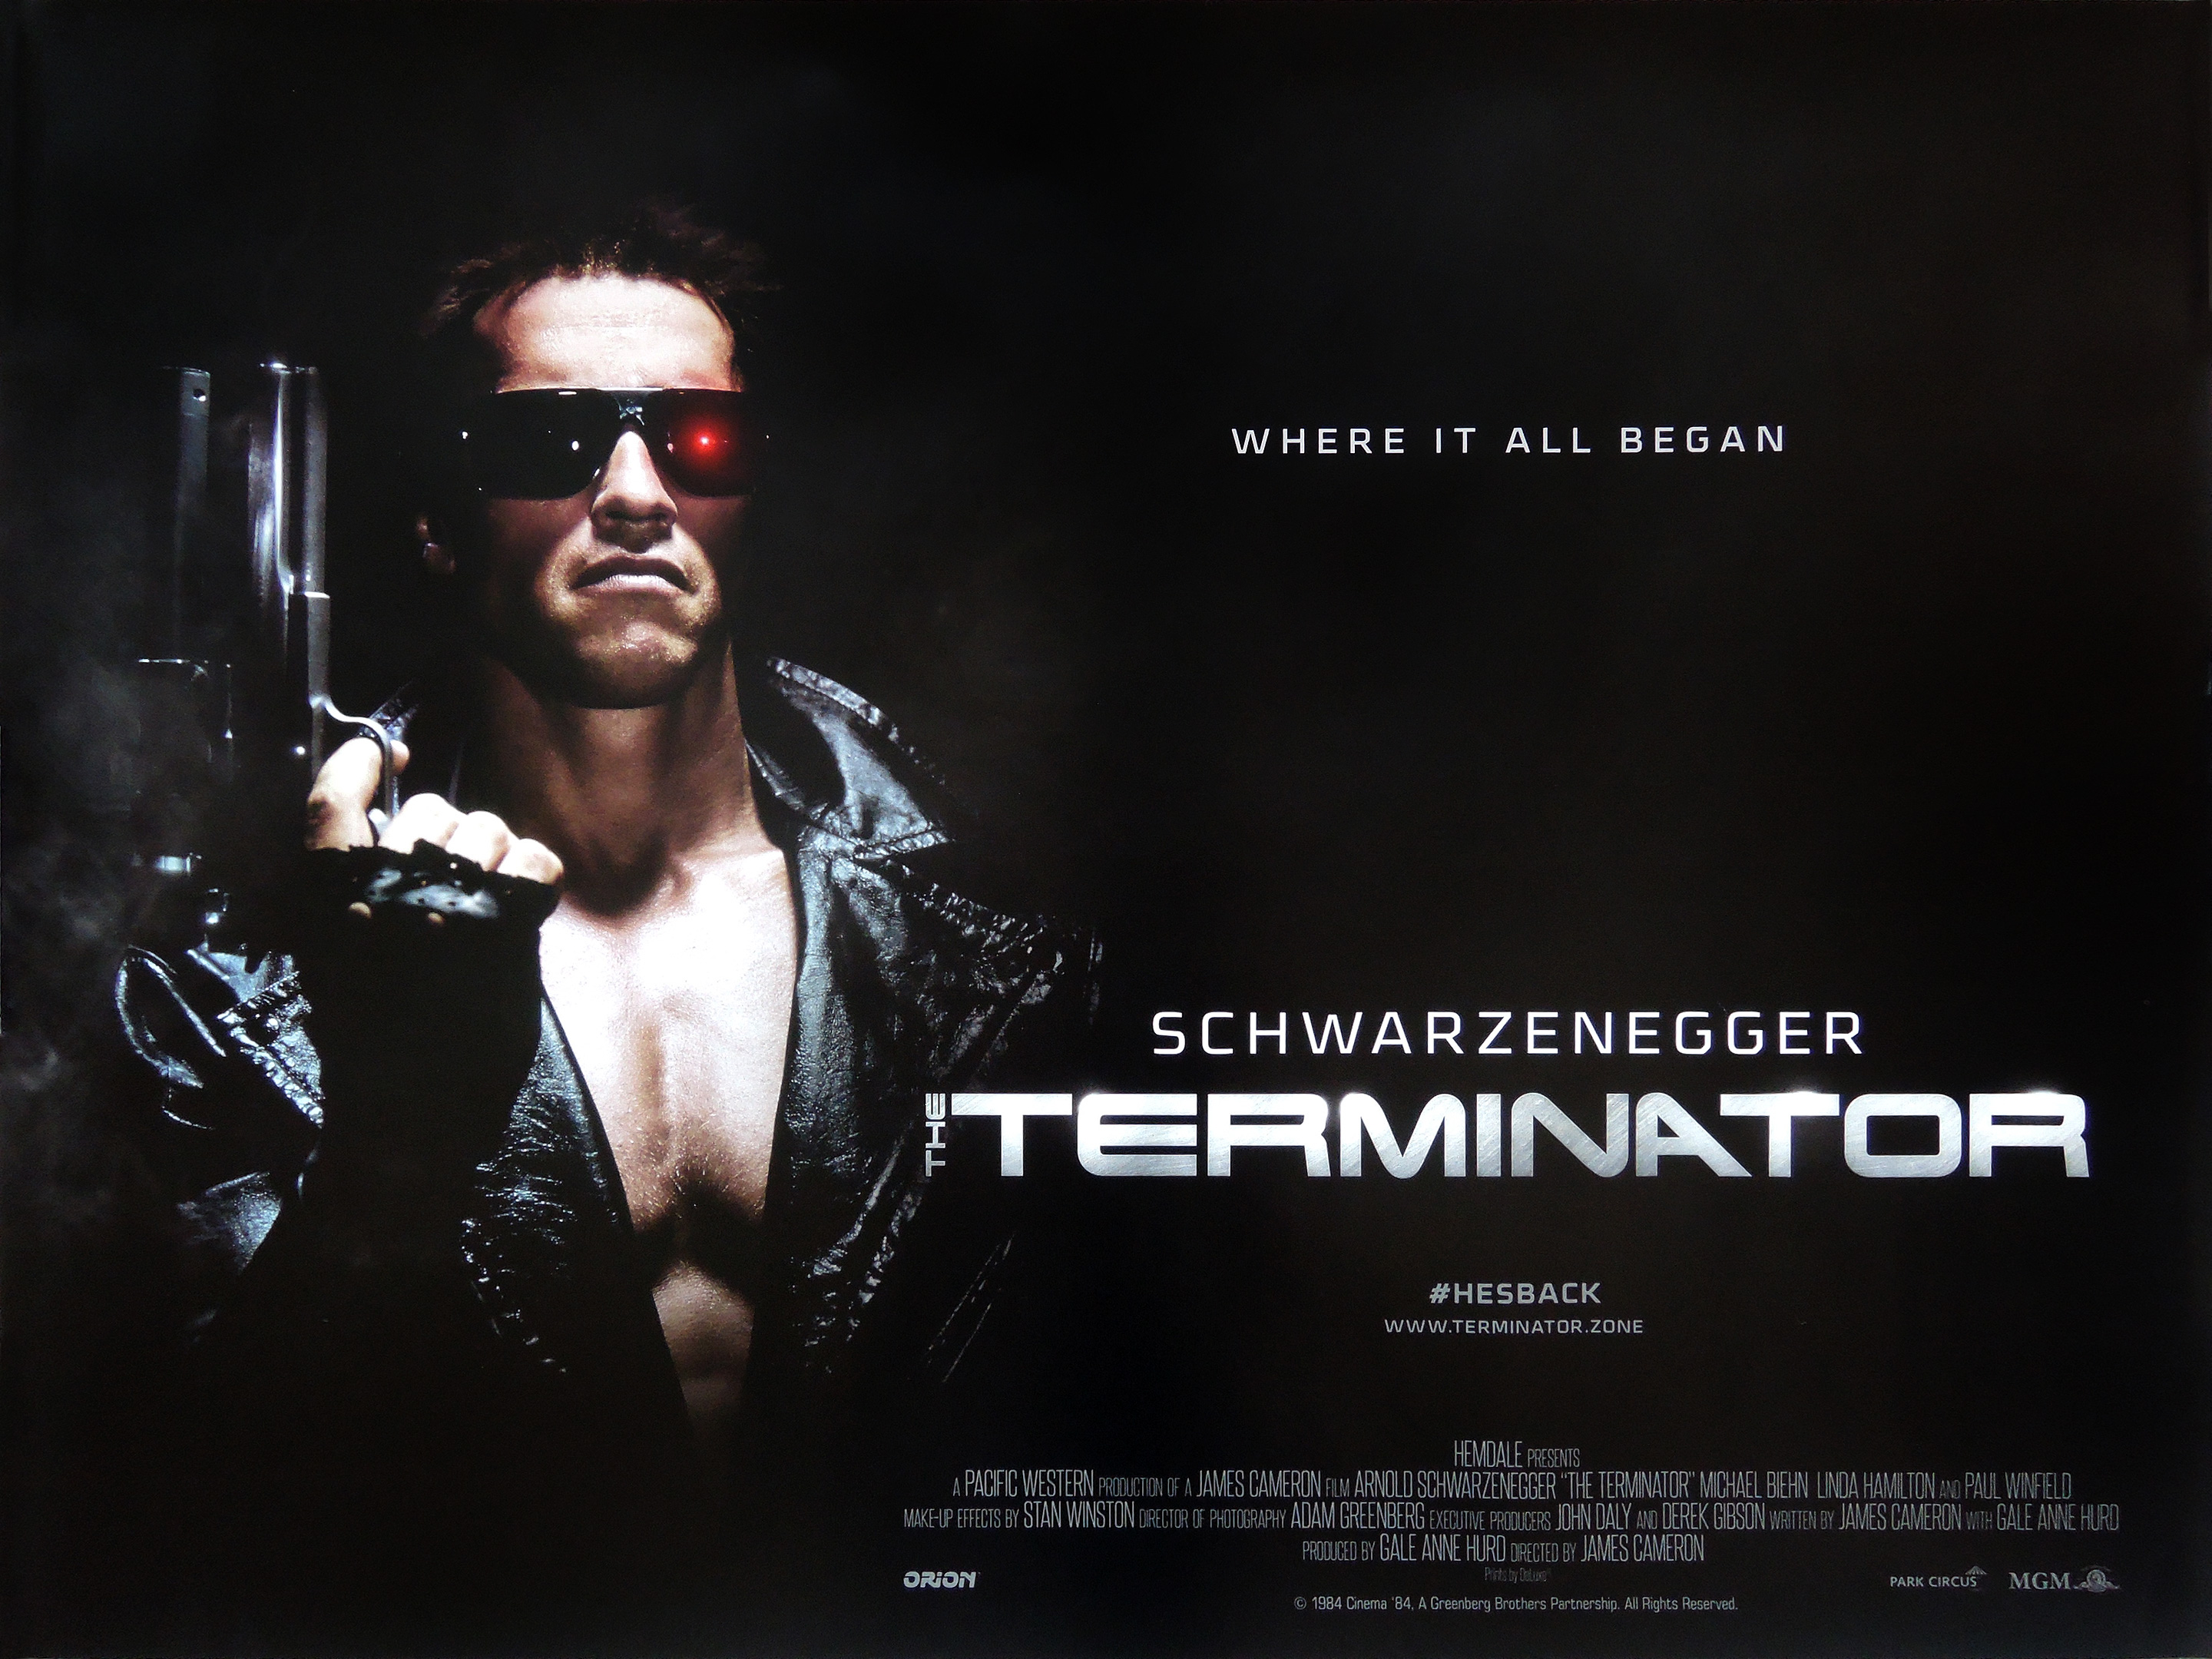 The Terminator movie quad poster